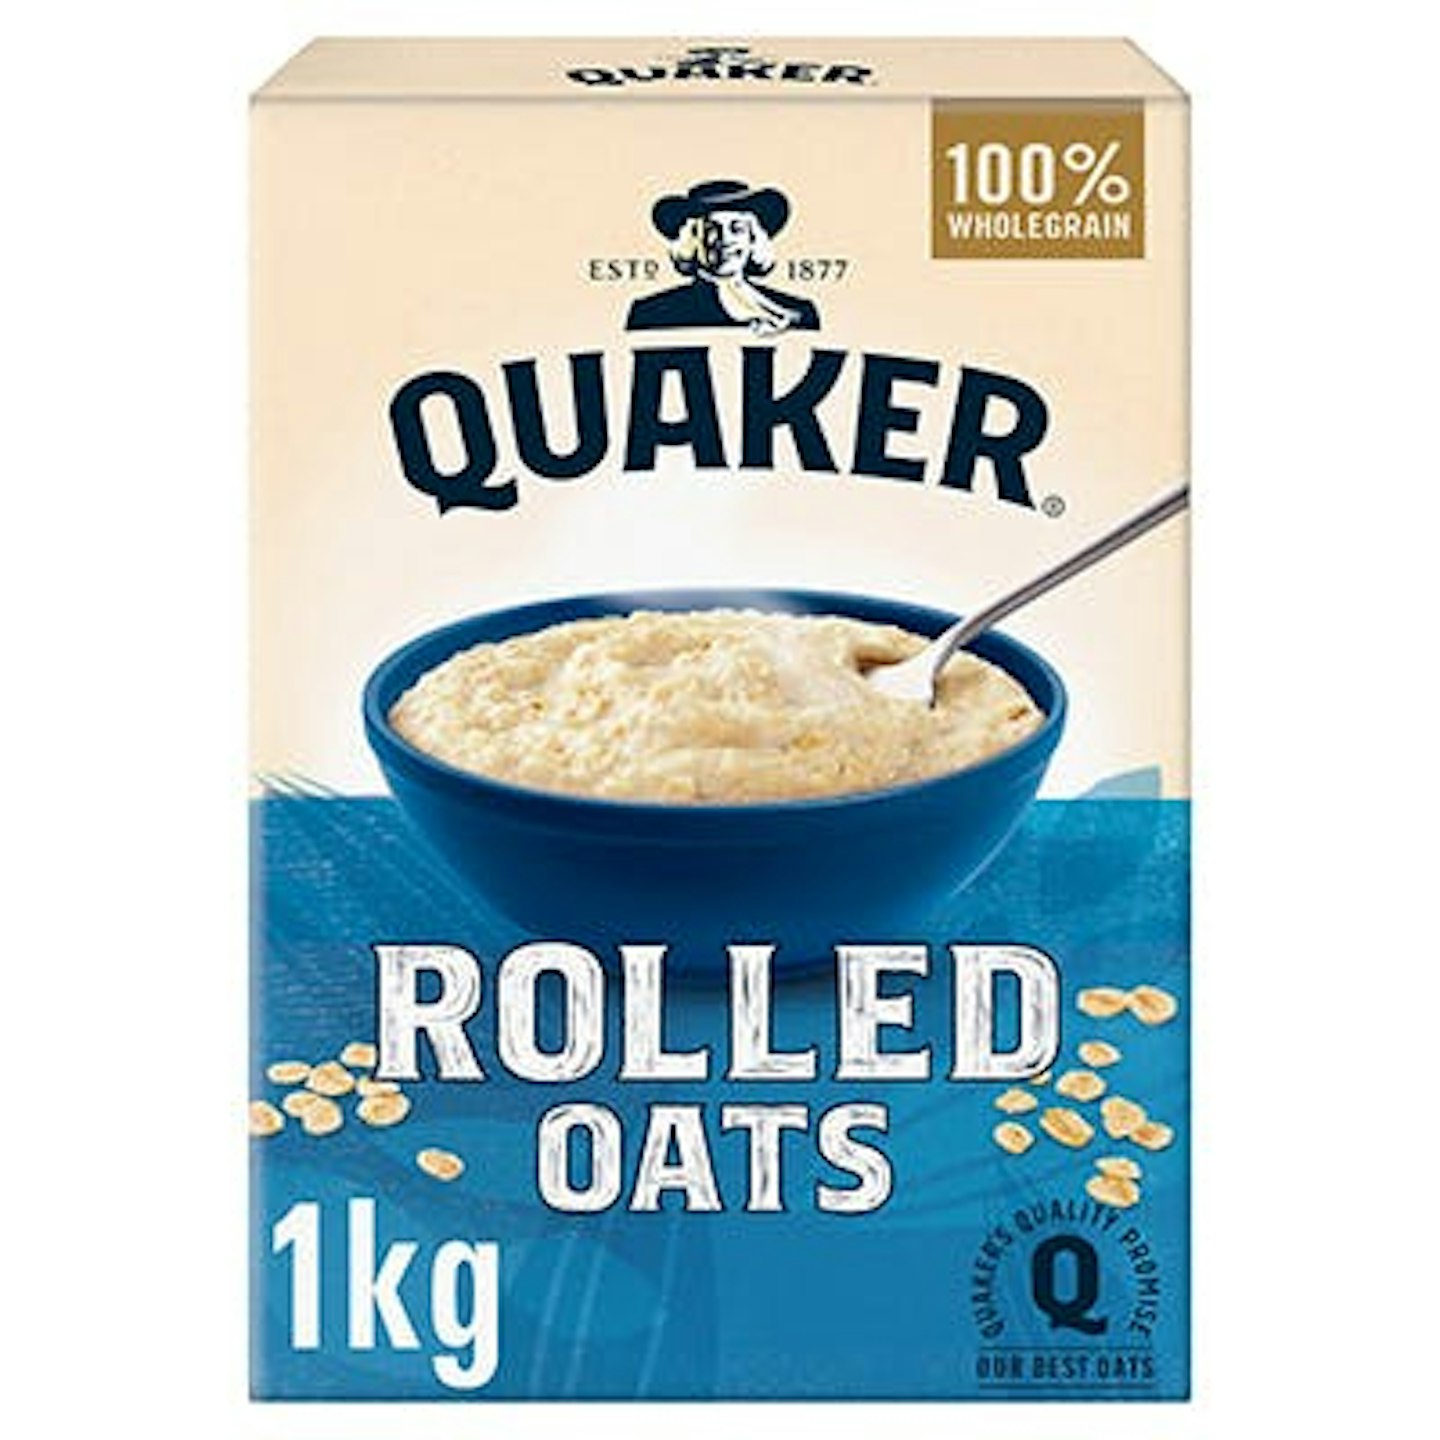 Quaker Porridge Oats 1kg